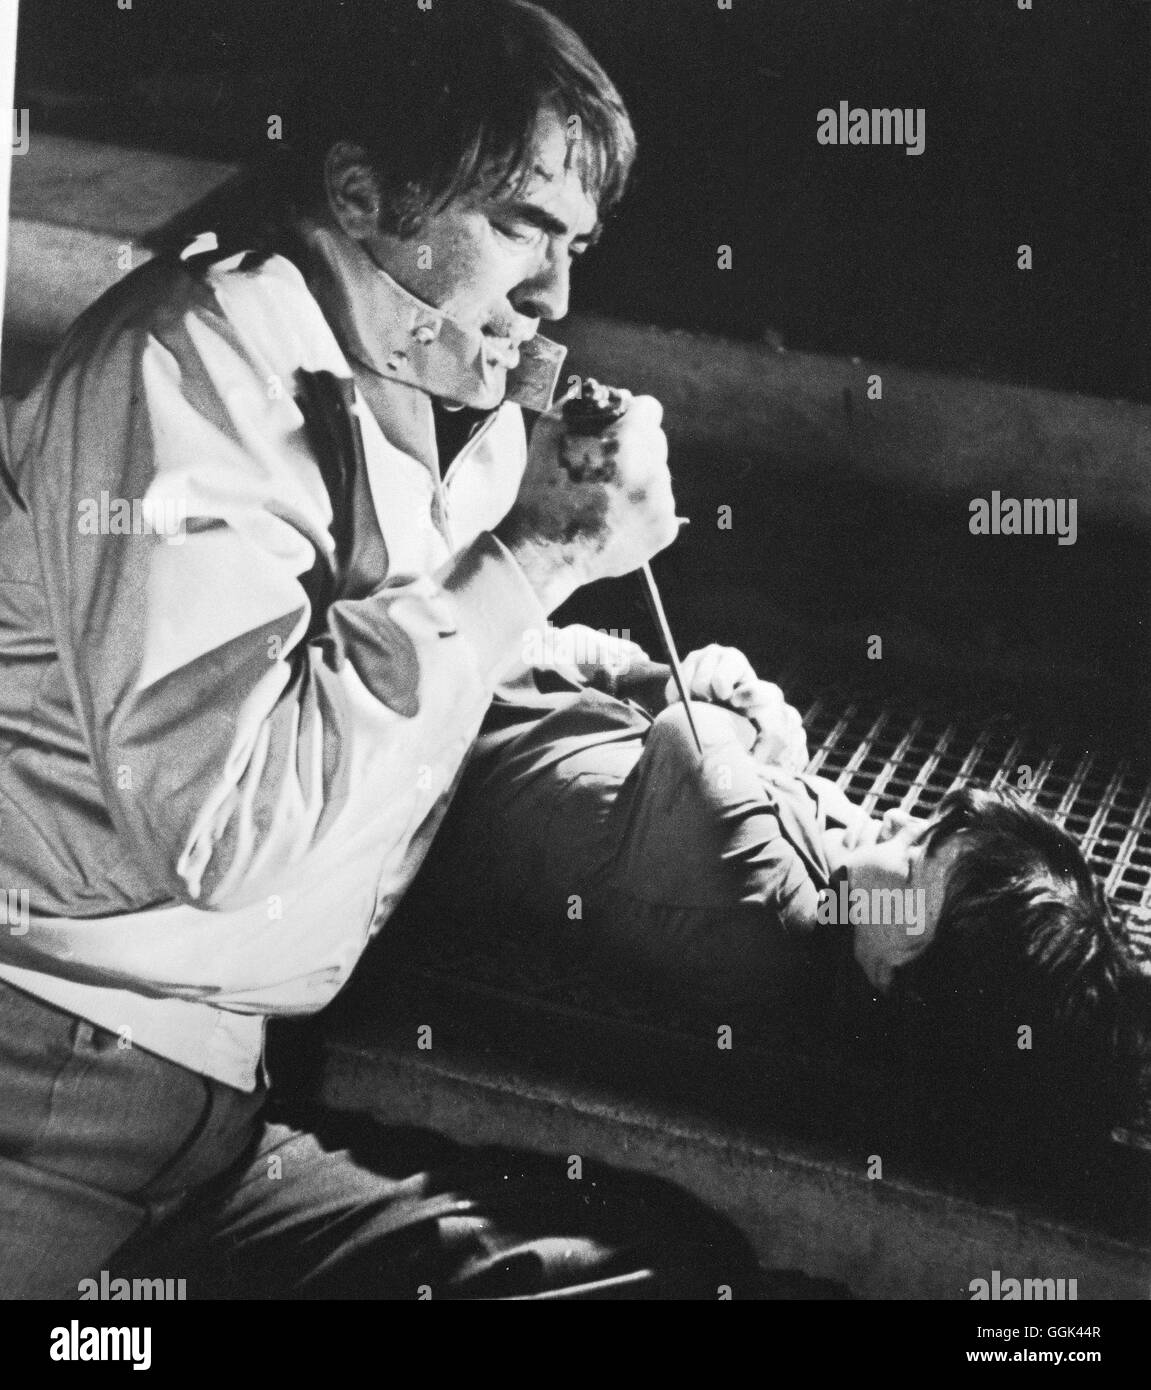 DAS OMEN / The Omen USA 1976 / Richard Donner Robert Thorn (GREGORY PECK), Damien (HARVEY STEVENS) Regie: Richard Donner aka. The Omen Stock Photo